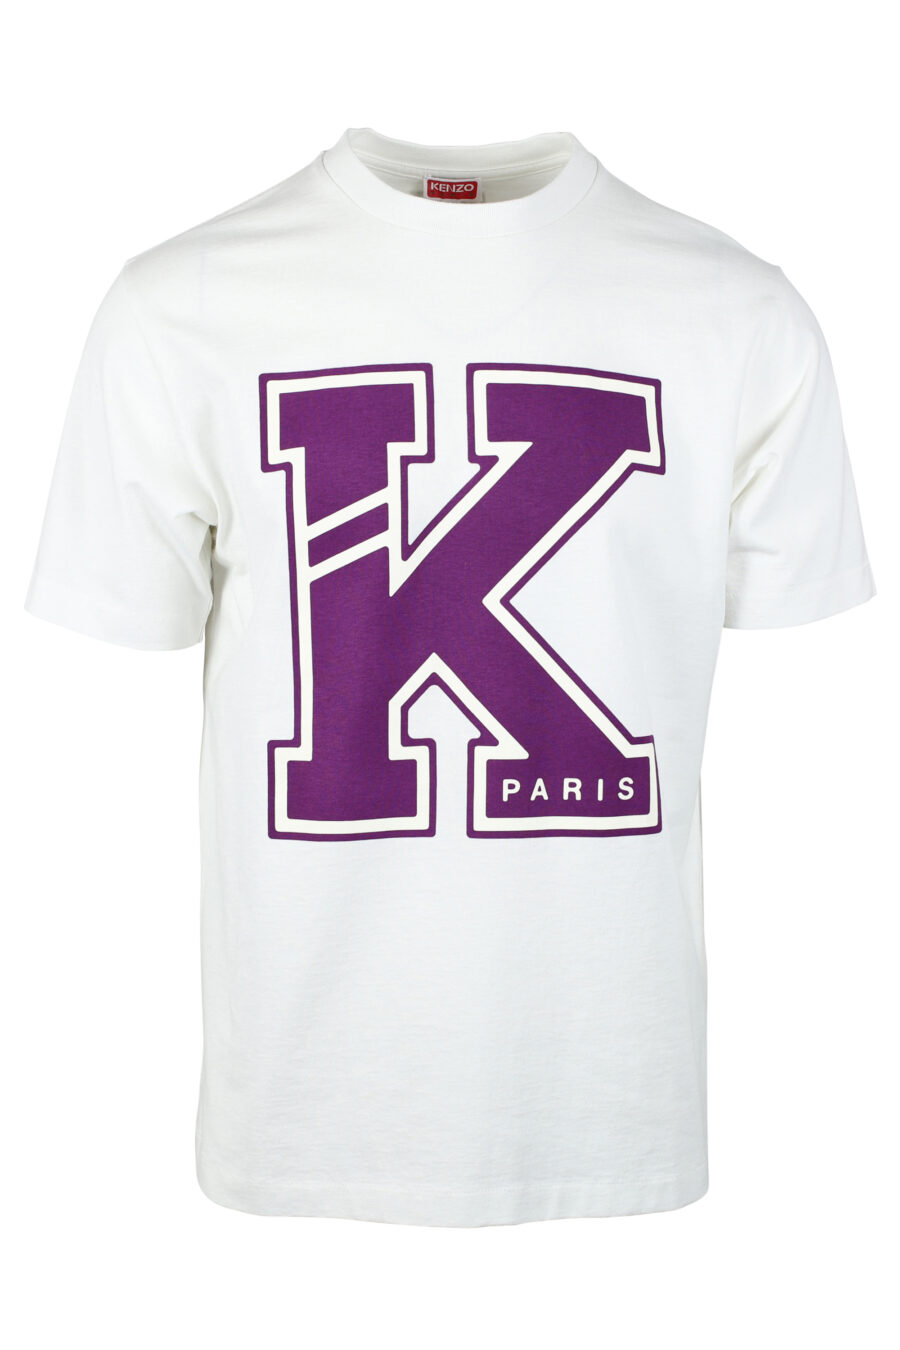 Weißes T-Shirt mit lila "K" Maxilogo - IMG 4684